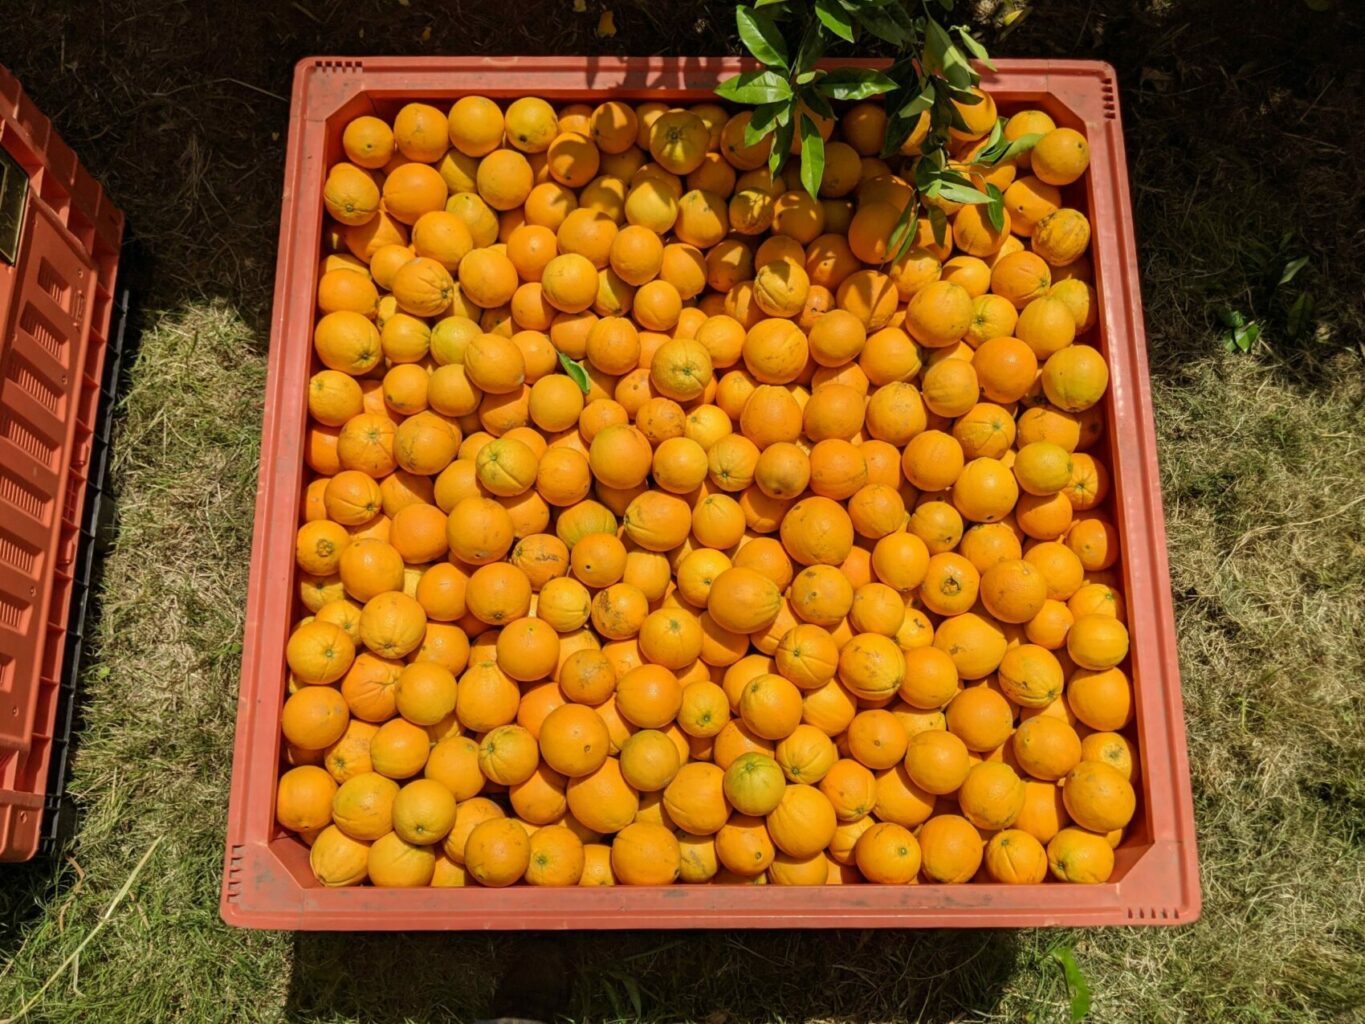 bin or oranges in field